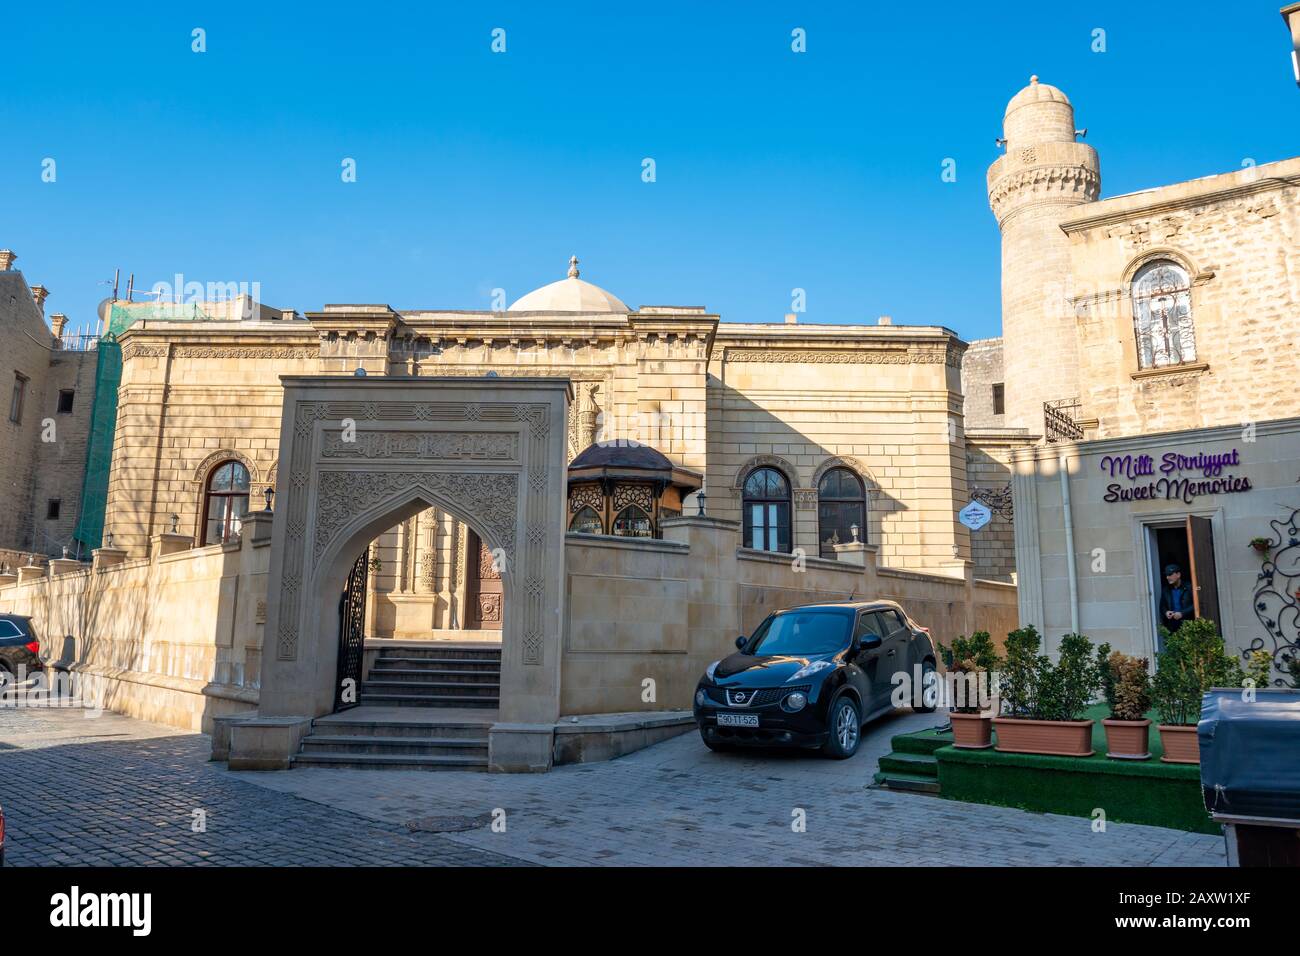 Baku, Azerbaijan 27 January 2020 - Mosque of Heydar cuma mascidi. Stock Photo